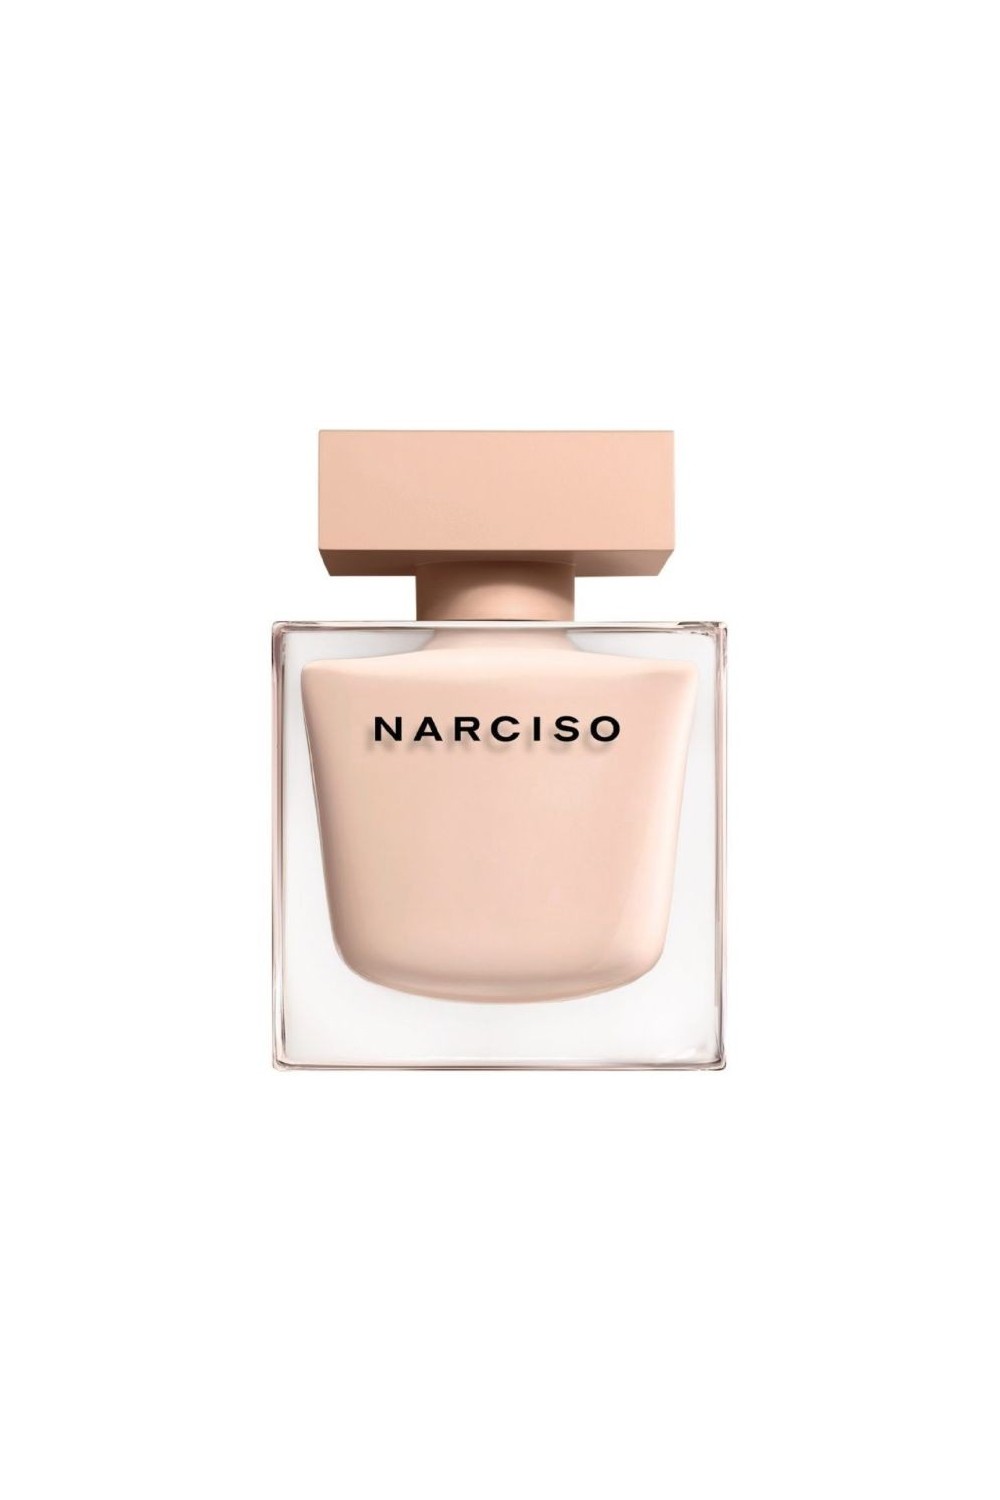 Narciso Rodriguez Narciso Poudrée Eau De Perfume Spray 50ml